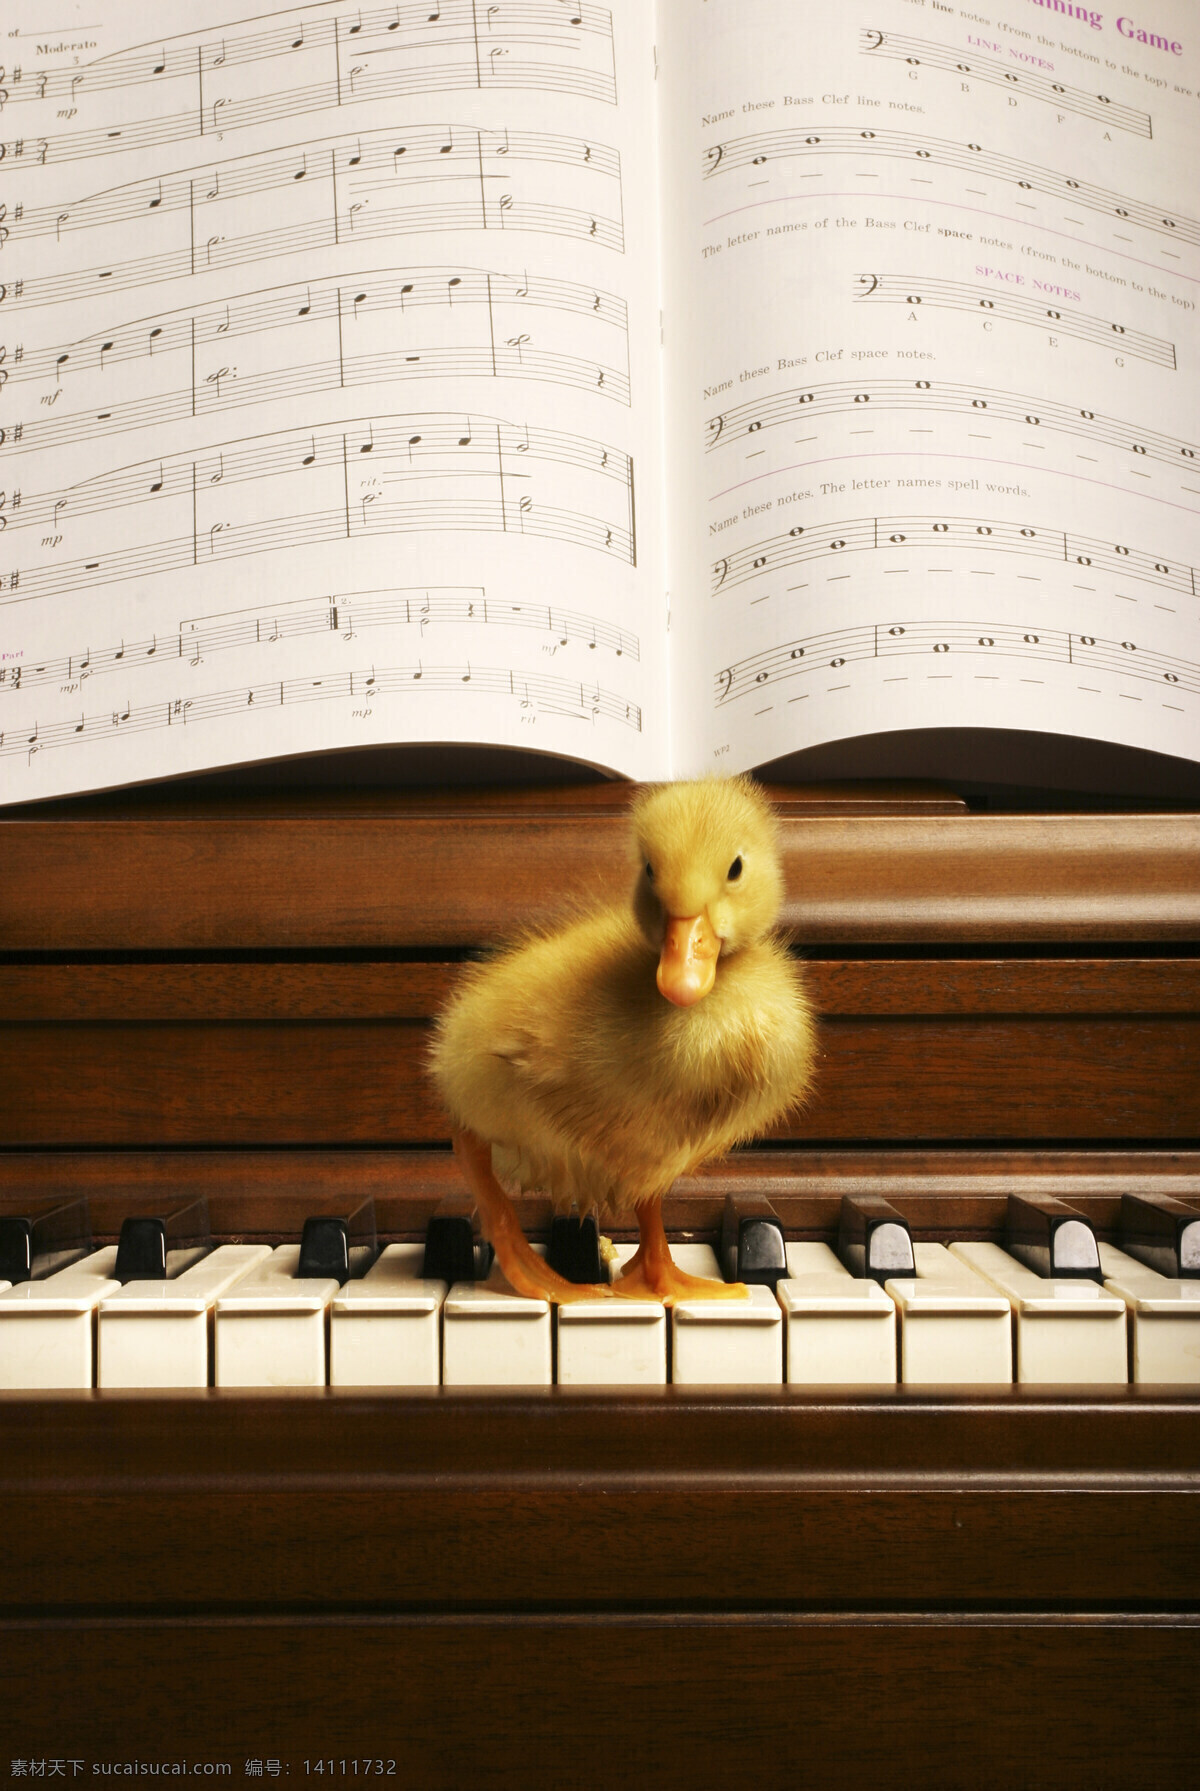 站 钢琴 上 小 鸭子 动物 小鸭子 乐器 典雅 黑白键 乐谱 五线谱 害怕 迷茫 陆地动物 生物世界 黑色